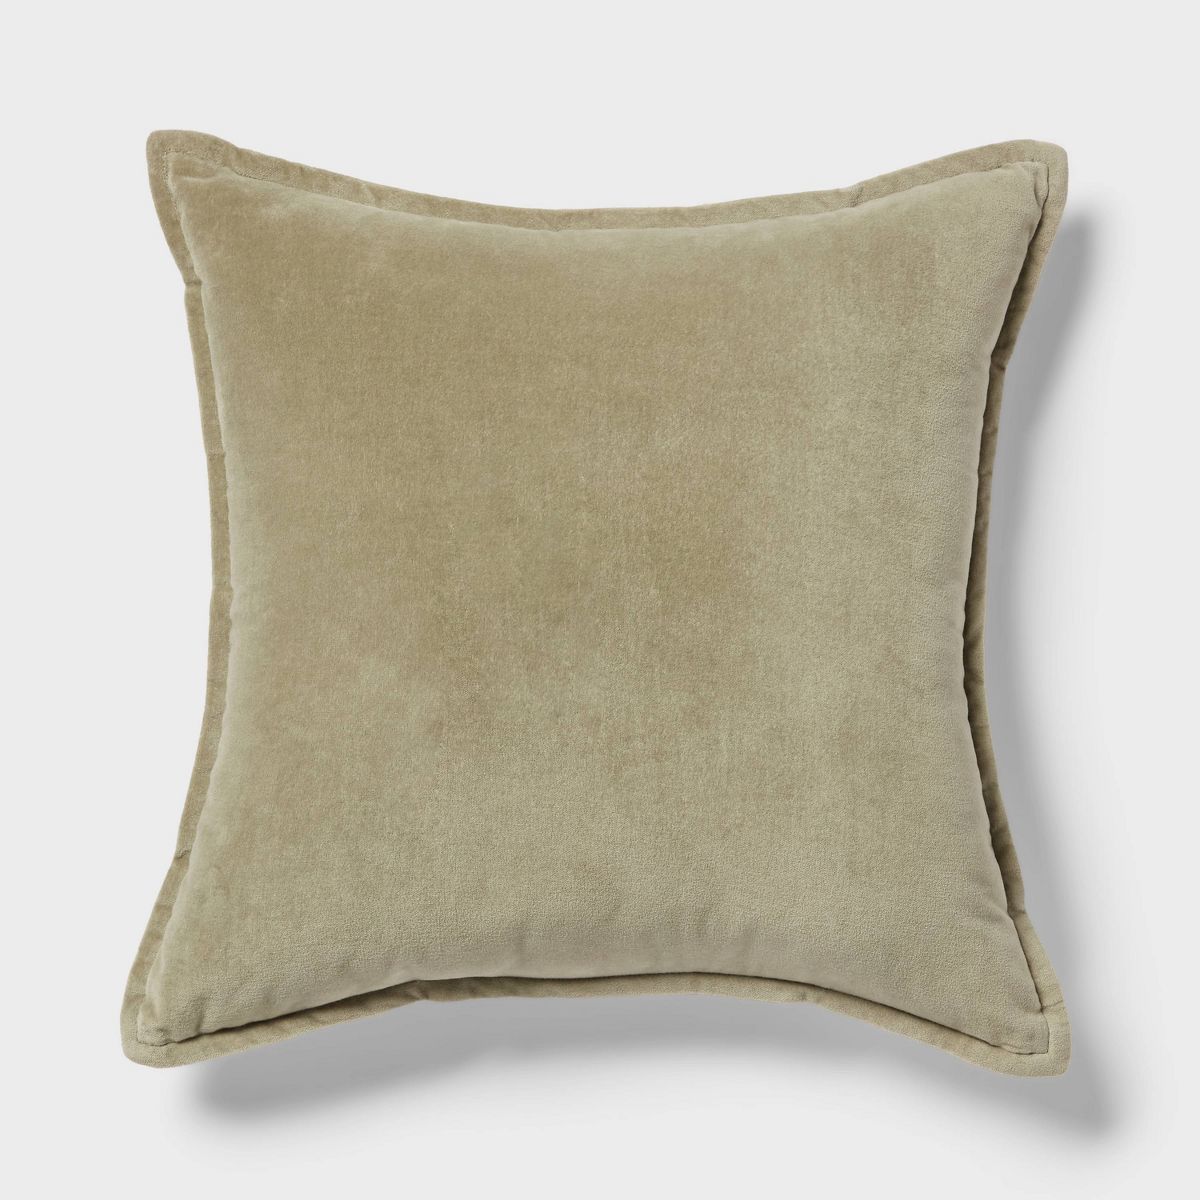 Trad Cotton Velvet with Linen Reverse Dec Pillow Oblong Green - Threshold™ | Target